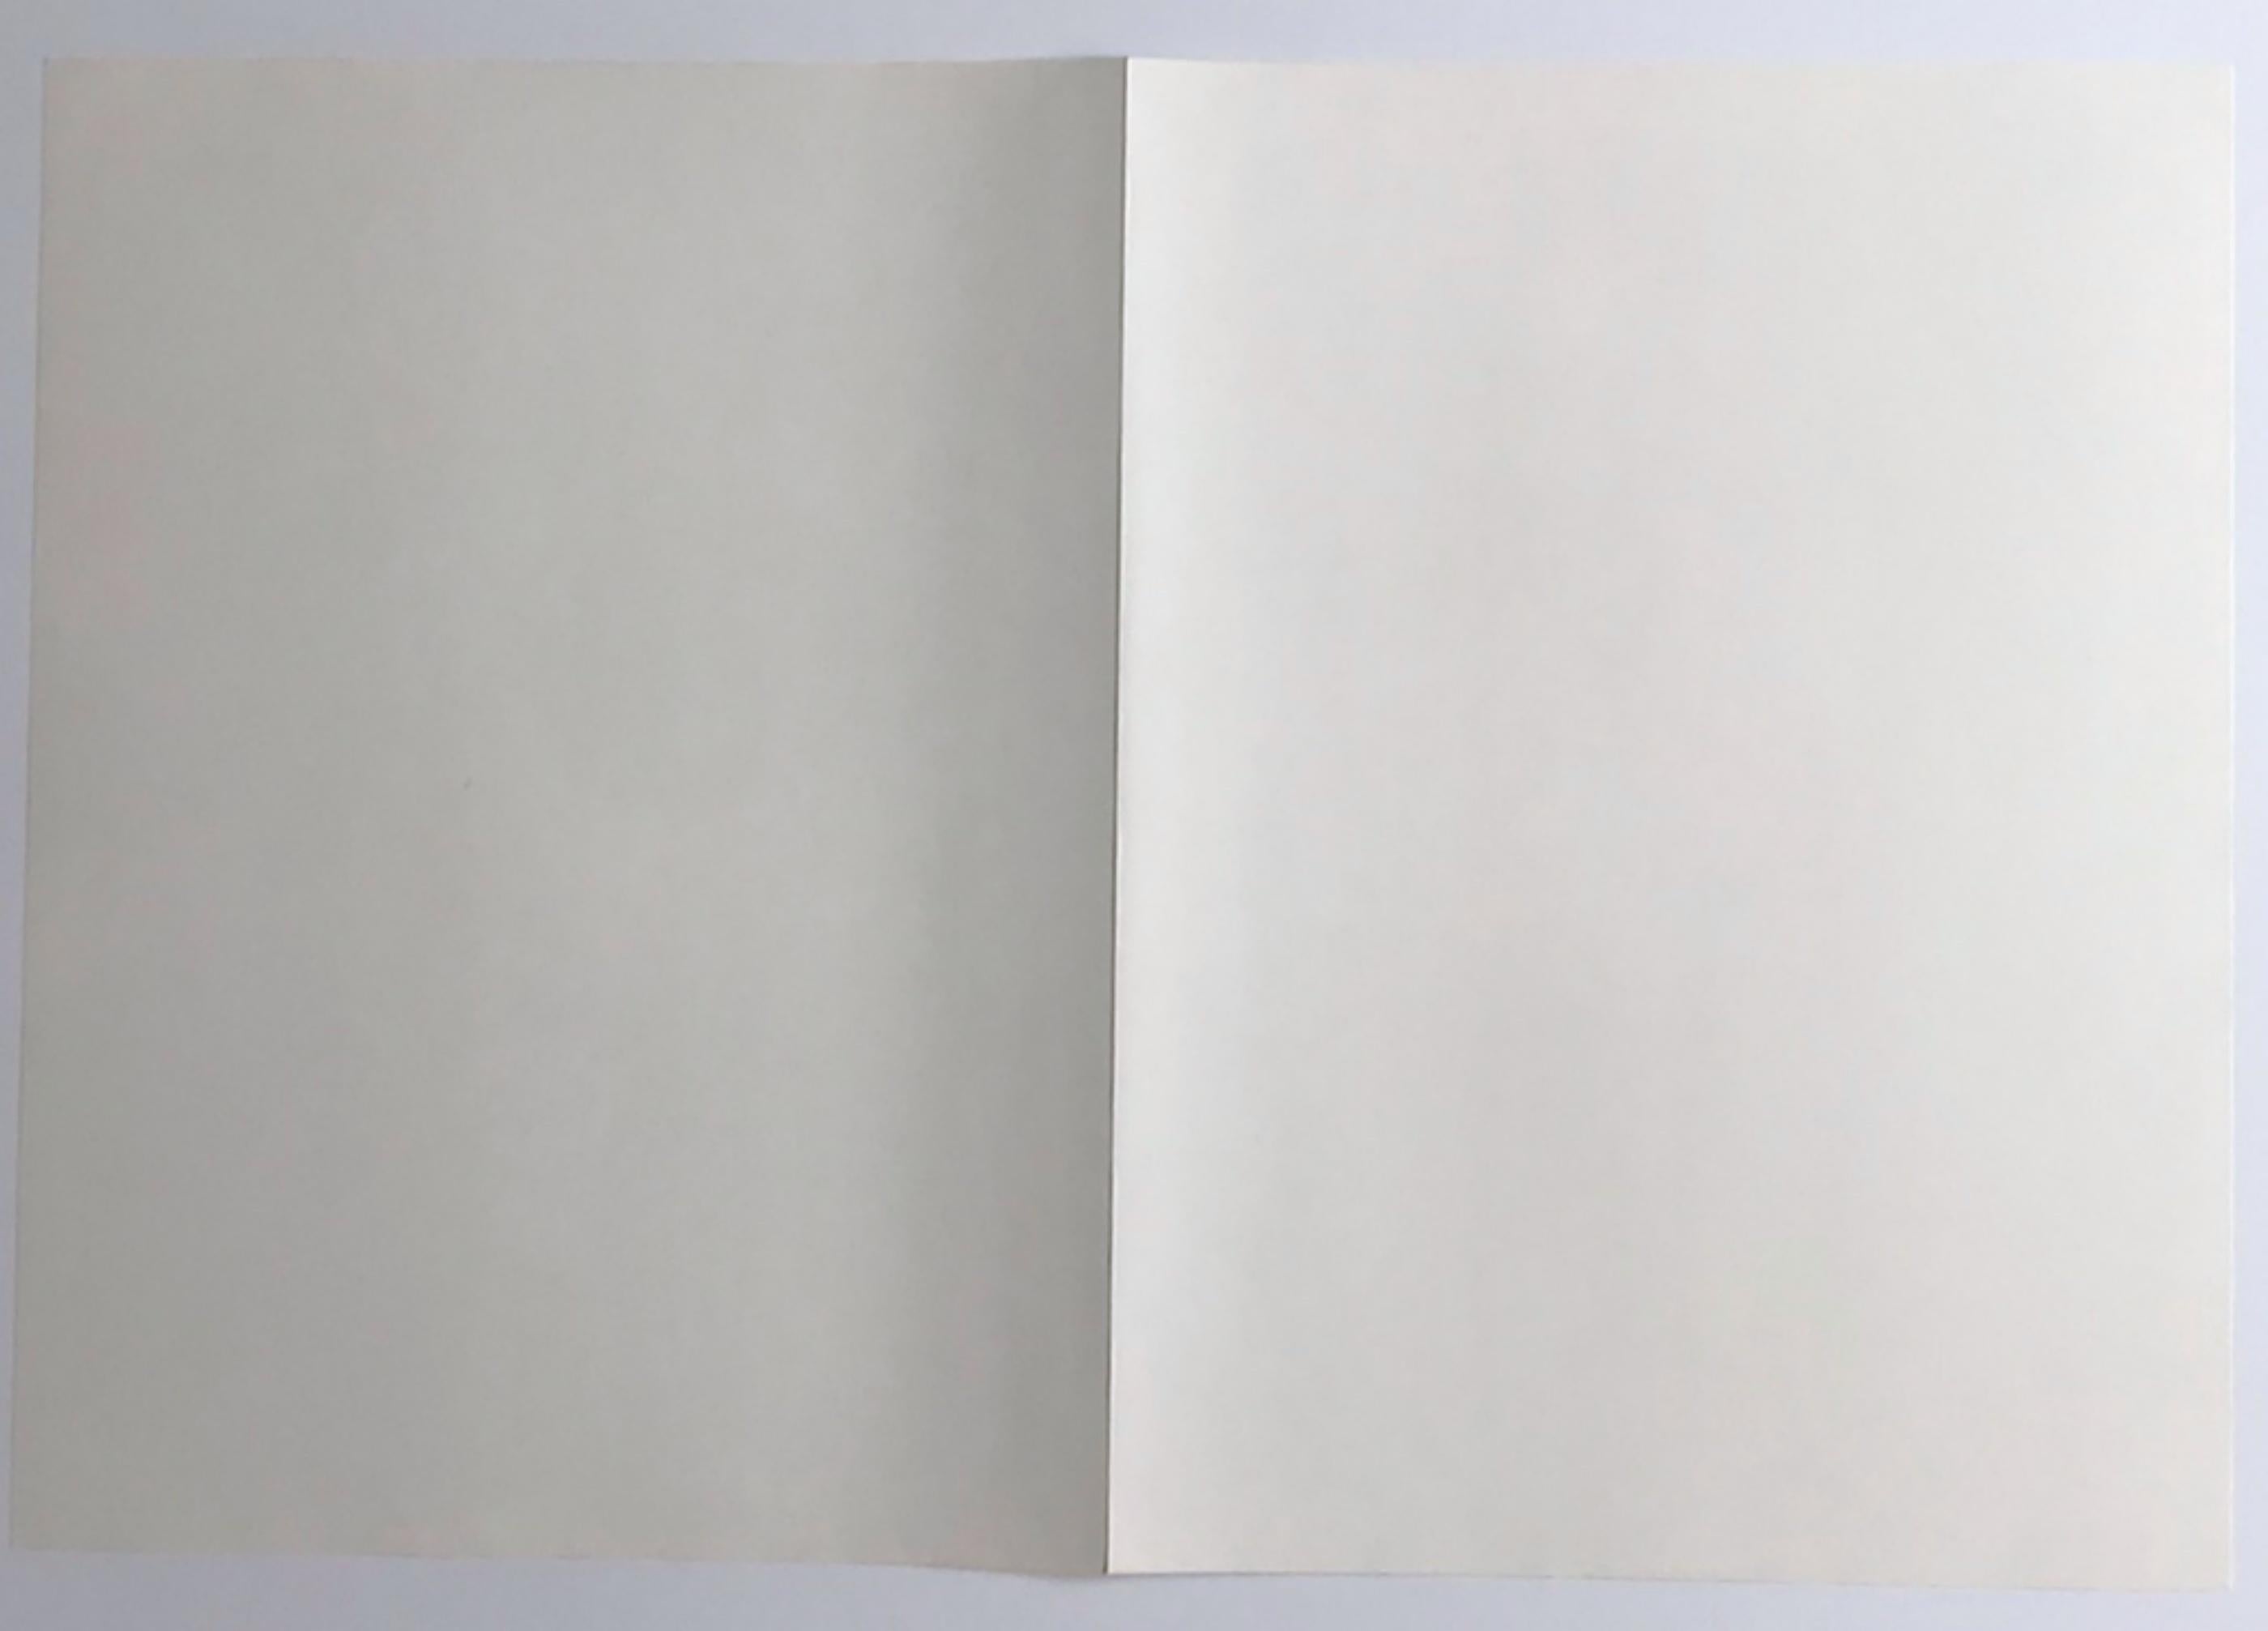 Joan Mitchell
Lithographie expressionniste abstraite (édition de luxe signée à la main de 30 exemplaires), 1972
Lithographie
L'œuvre est signée à la main par Joan Mitchell sur la page de colophon (séparée) du portfolio (voir photos).
15 × 22